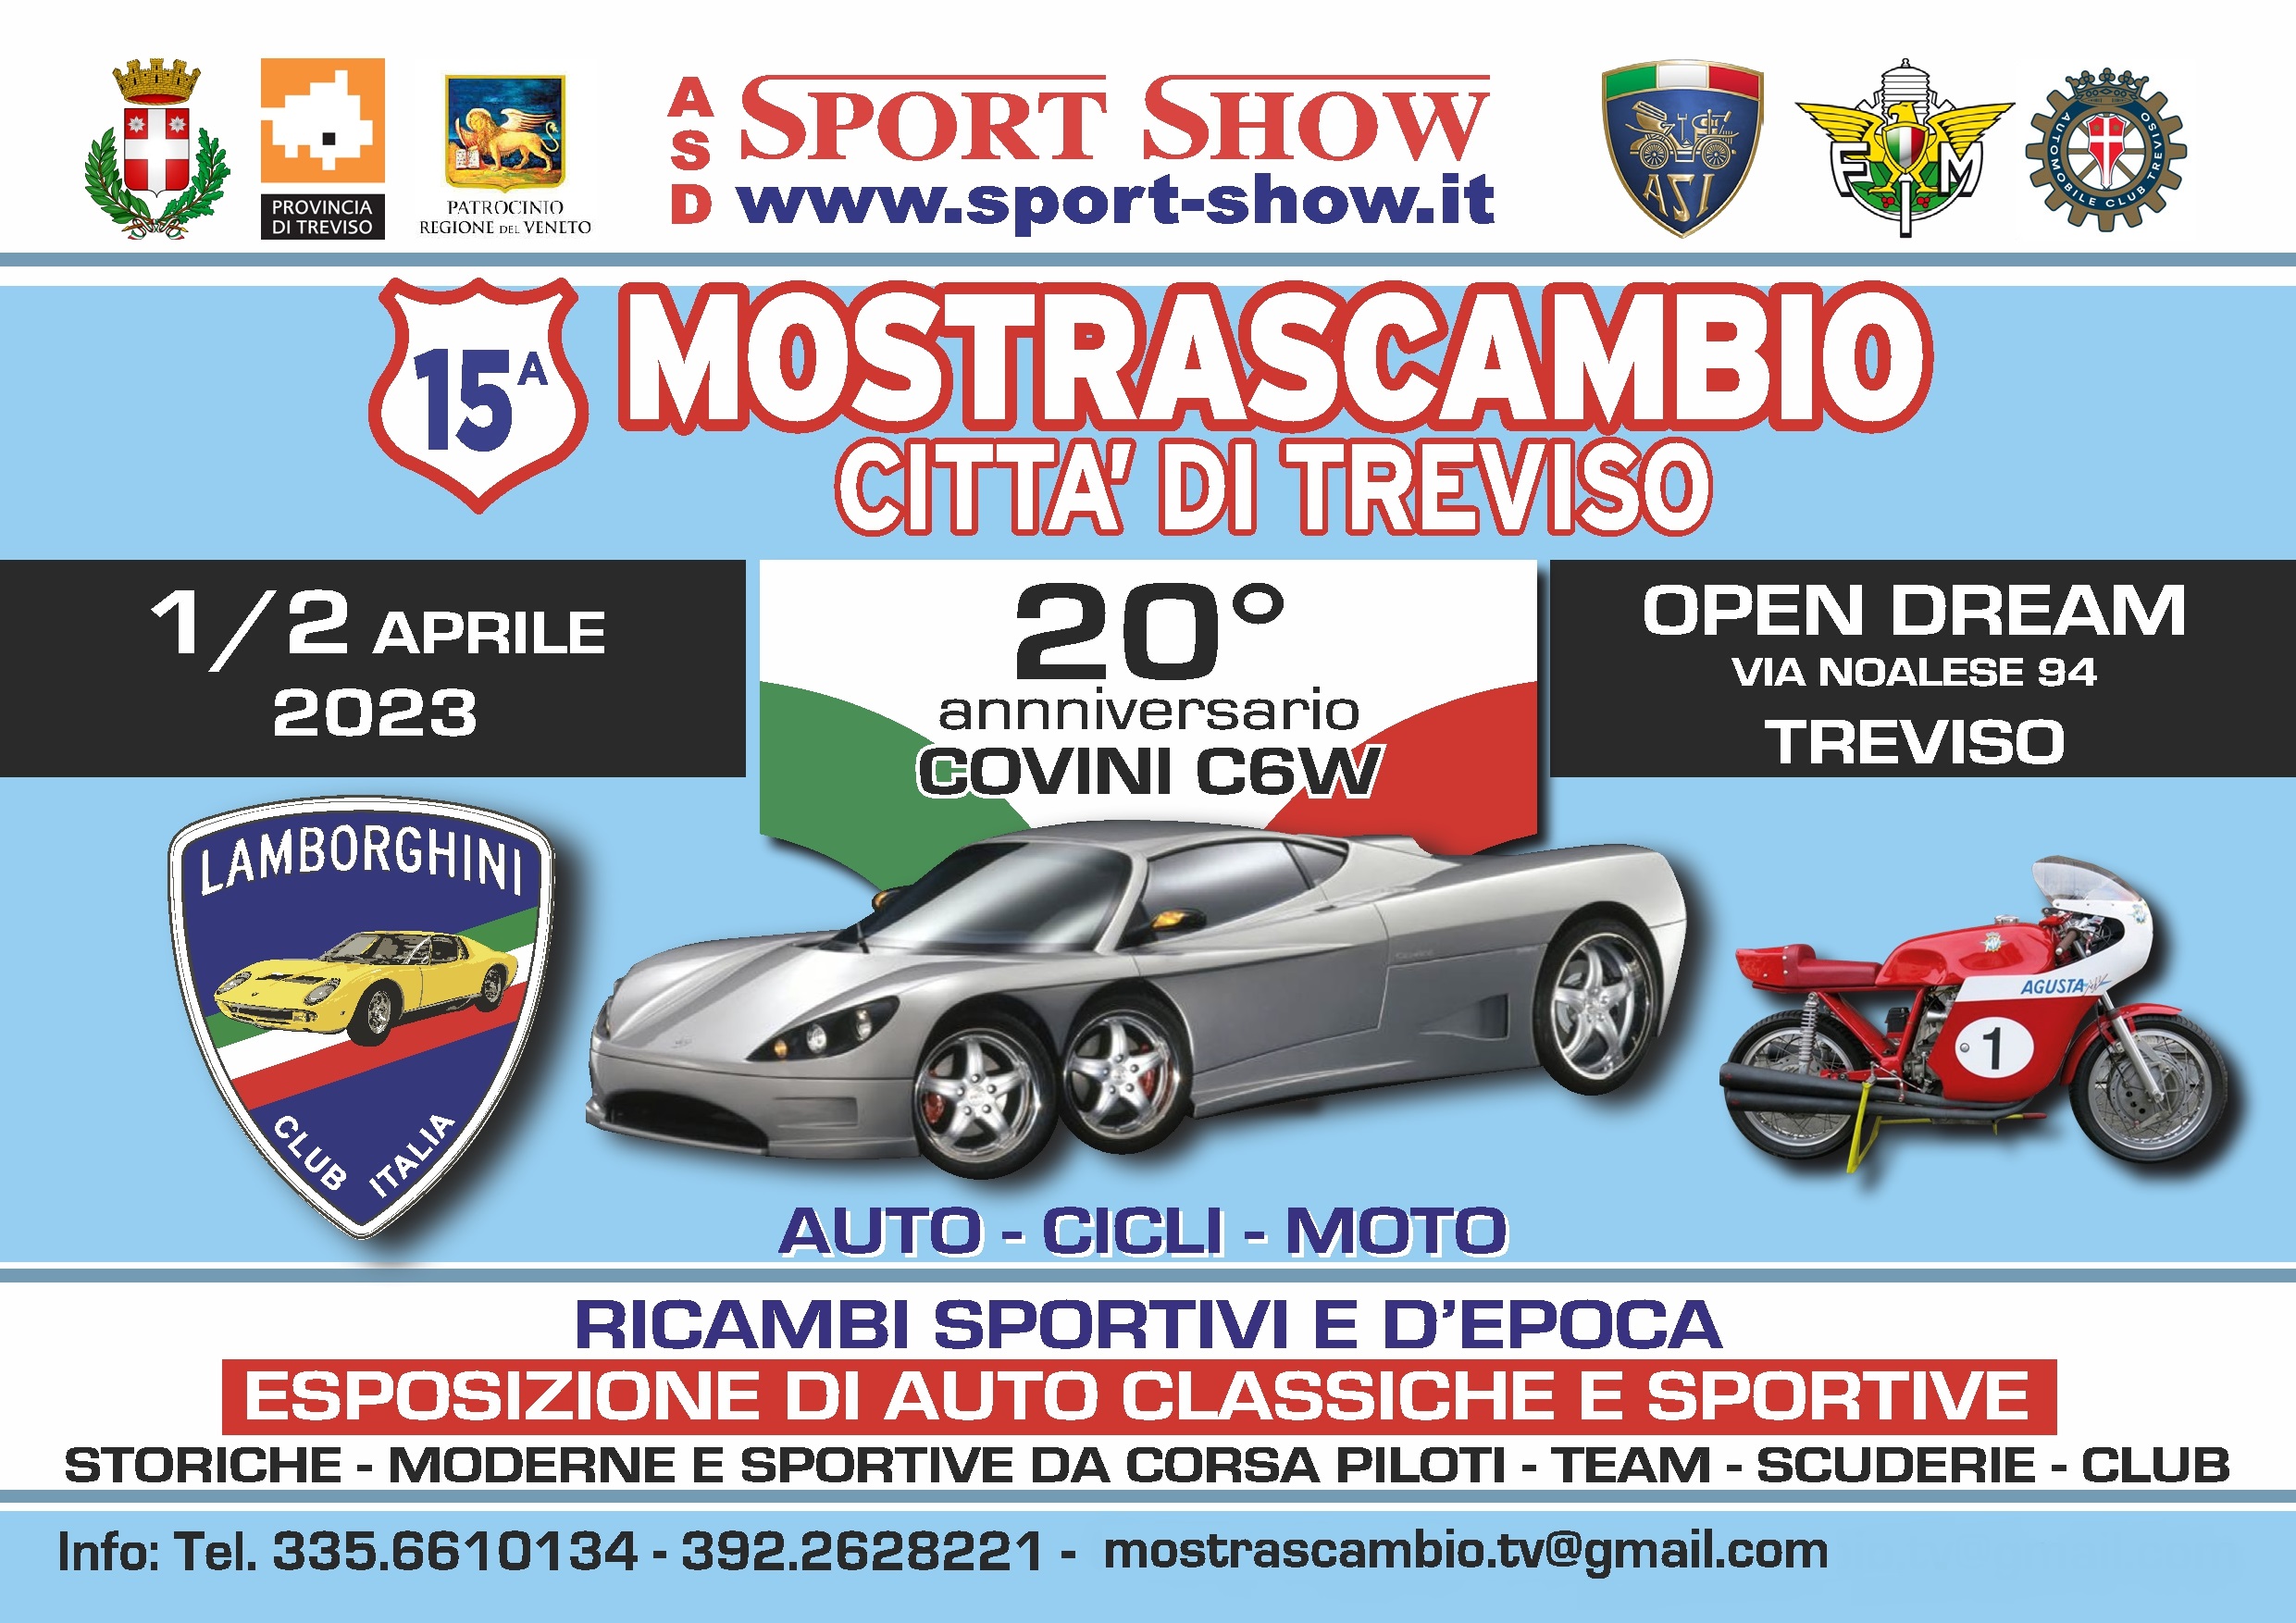 Mostra-Scambio-Citta-di-Treviso-2023